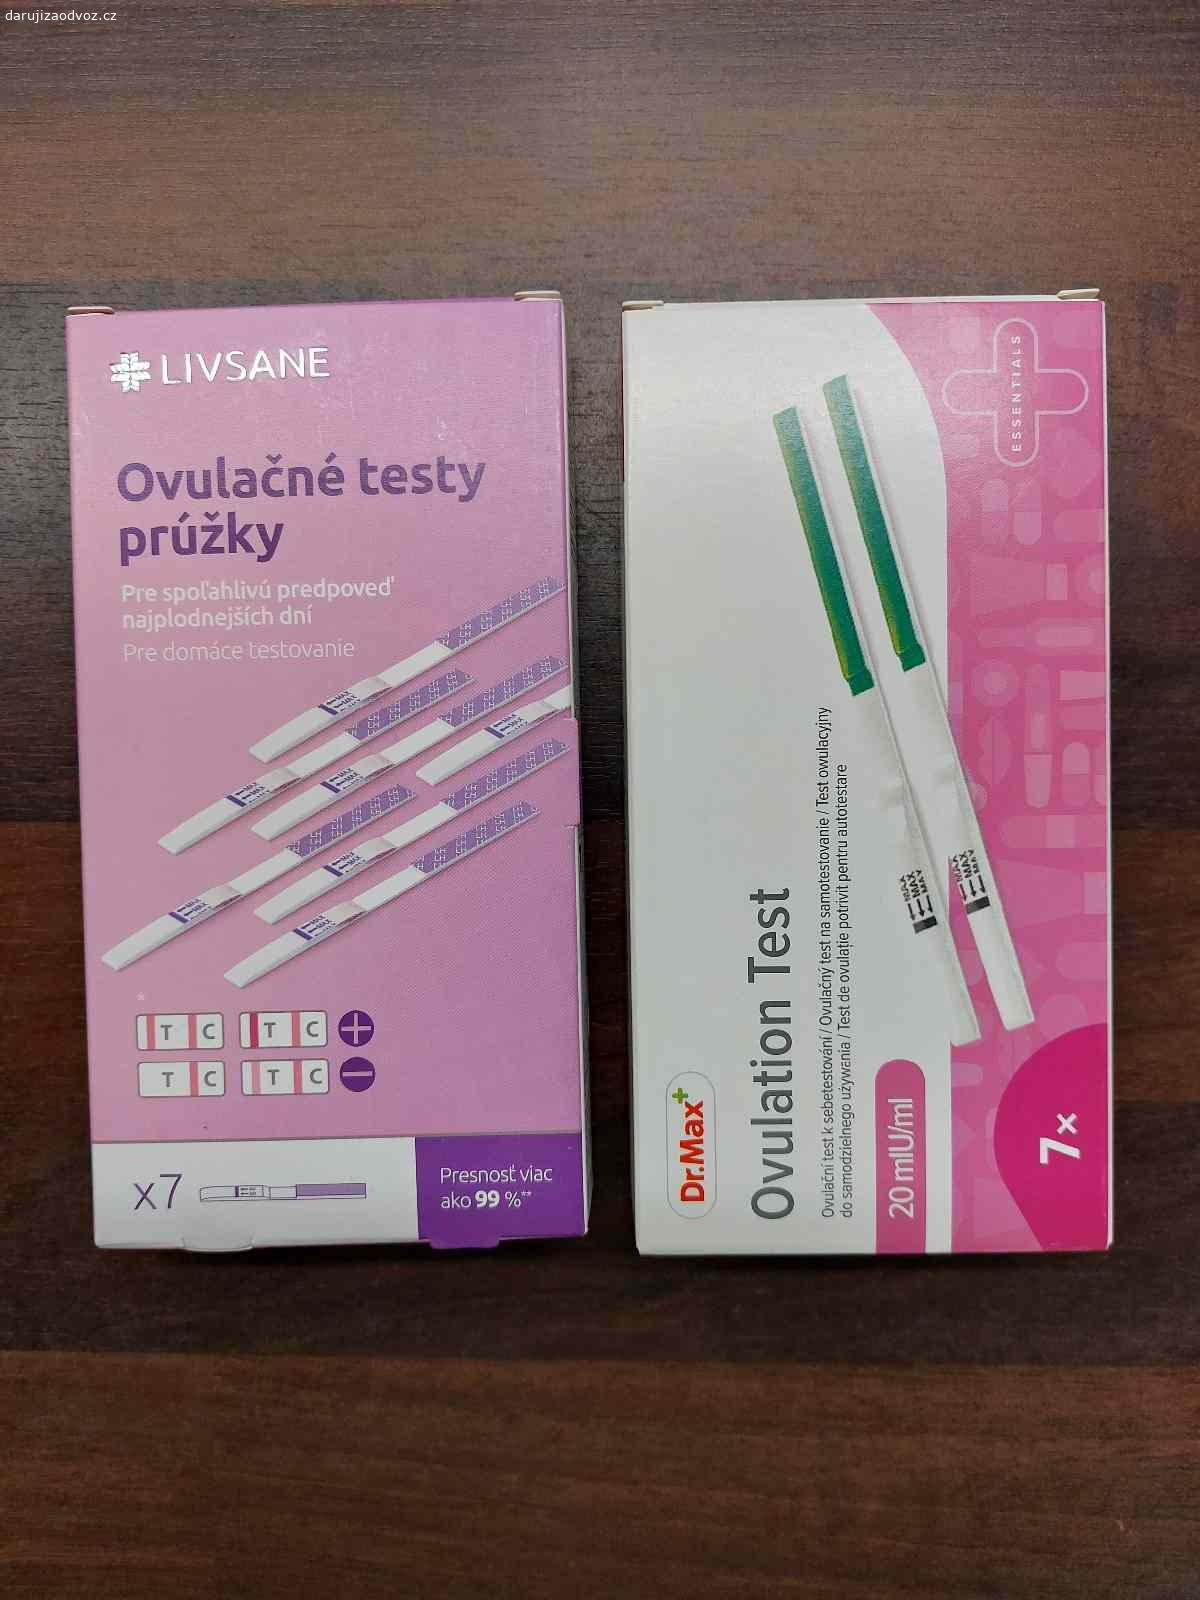 Daruji 12 ovulačních testů. Již nepotřebujeme, tak snad poslouží jinde :)
Jsou do 12/24 a 2/26